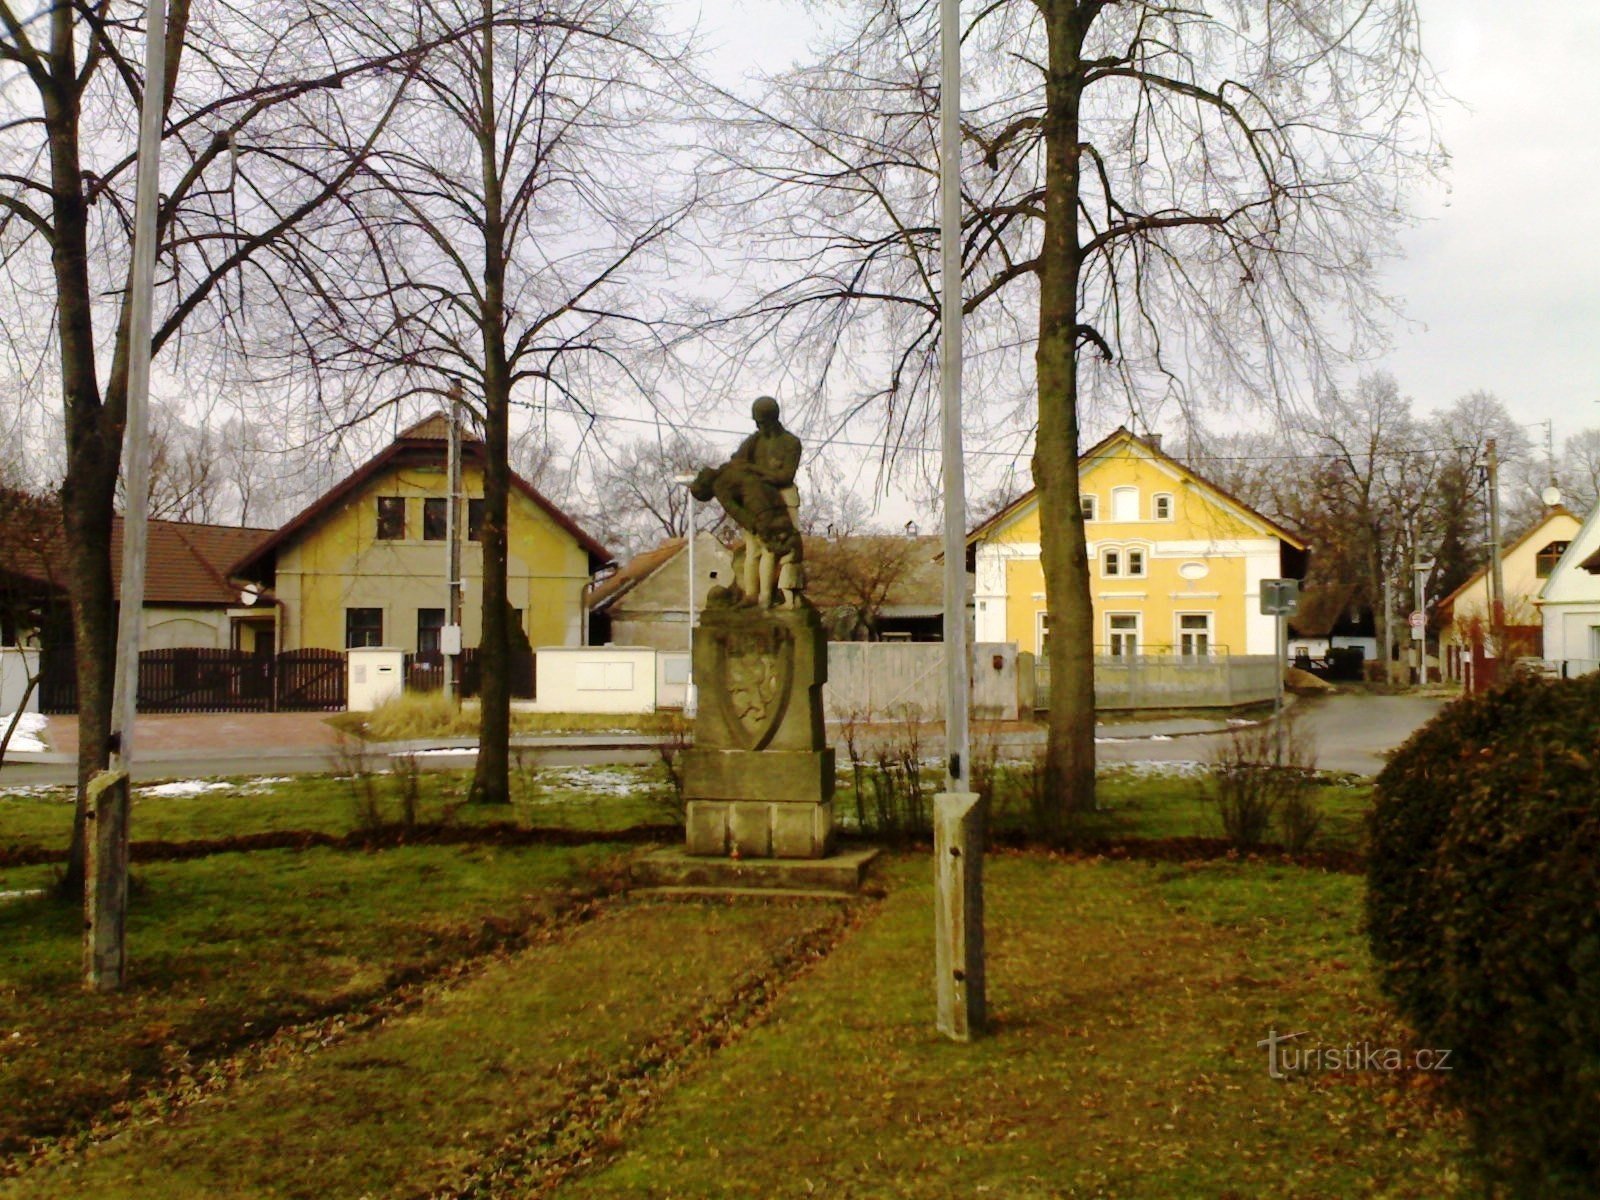 Malšova lhota - ett monument över krigets offer